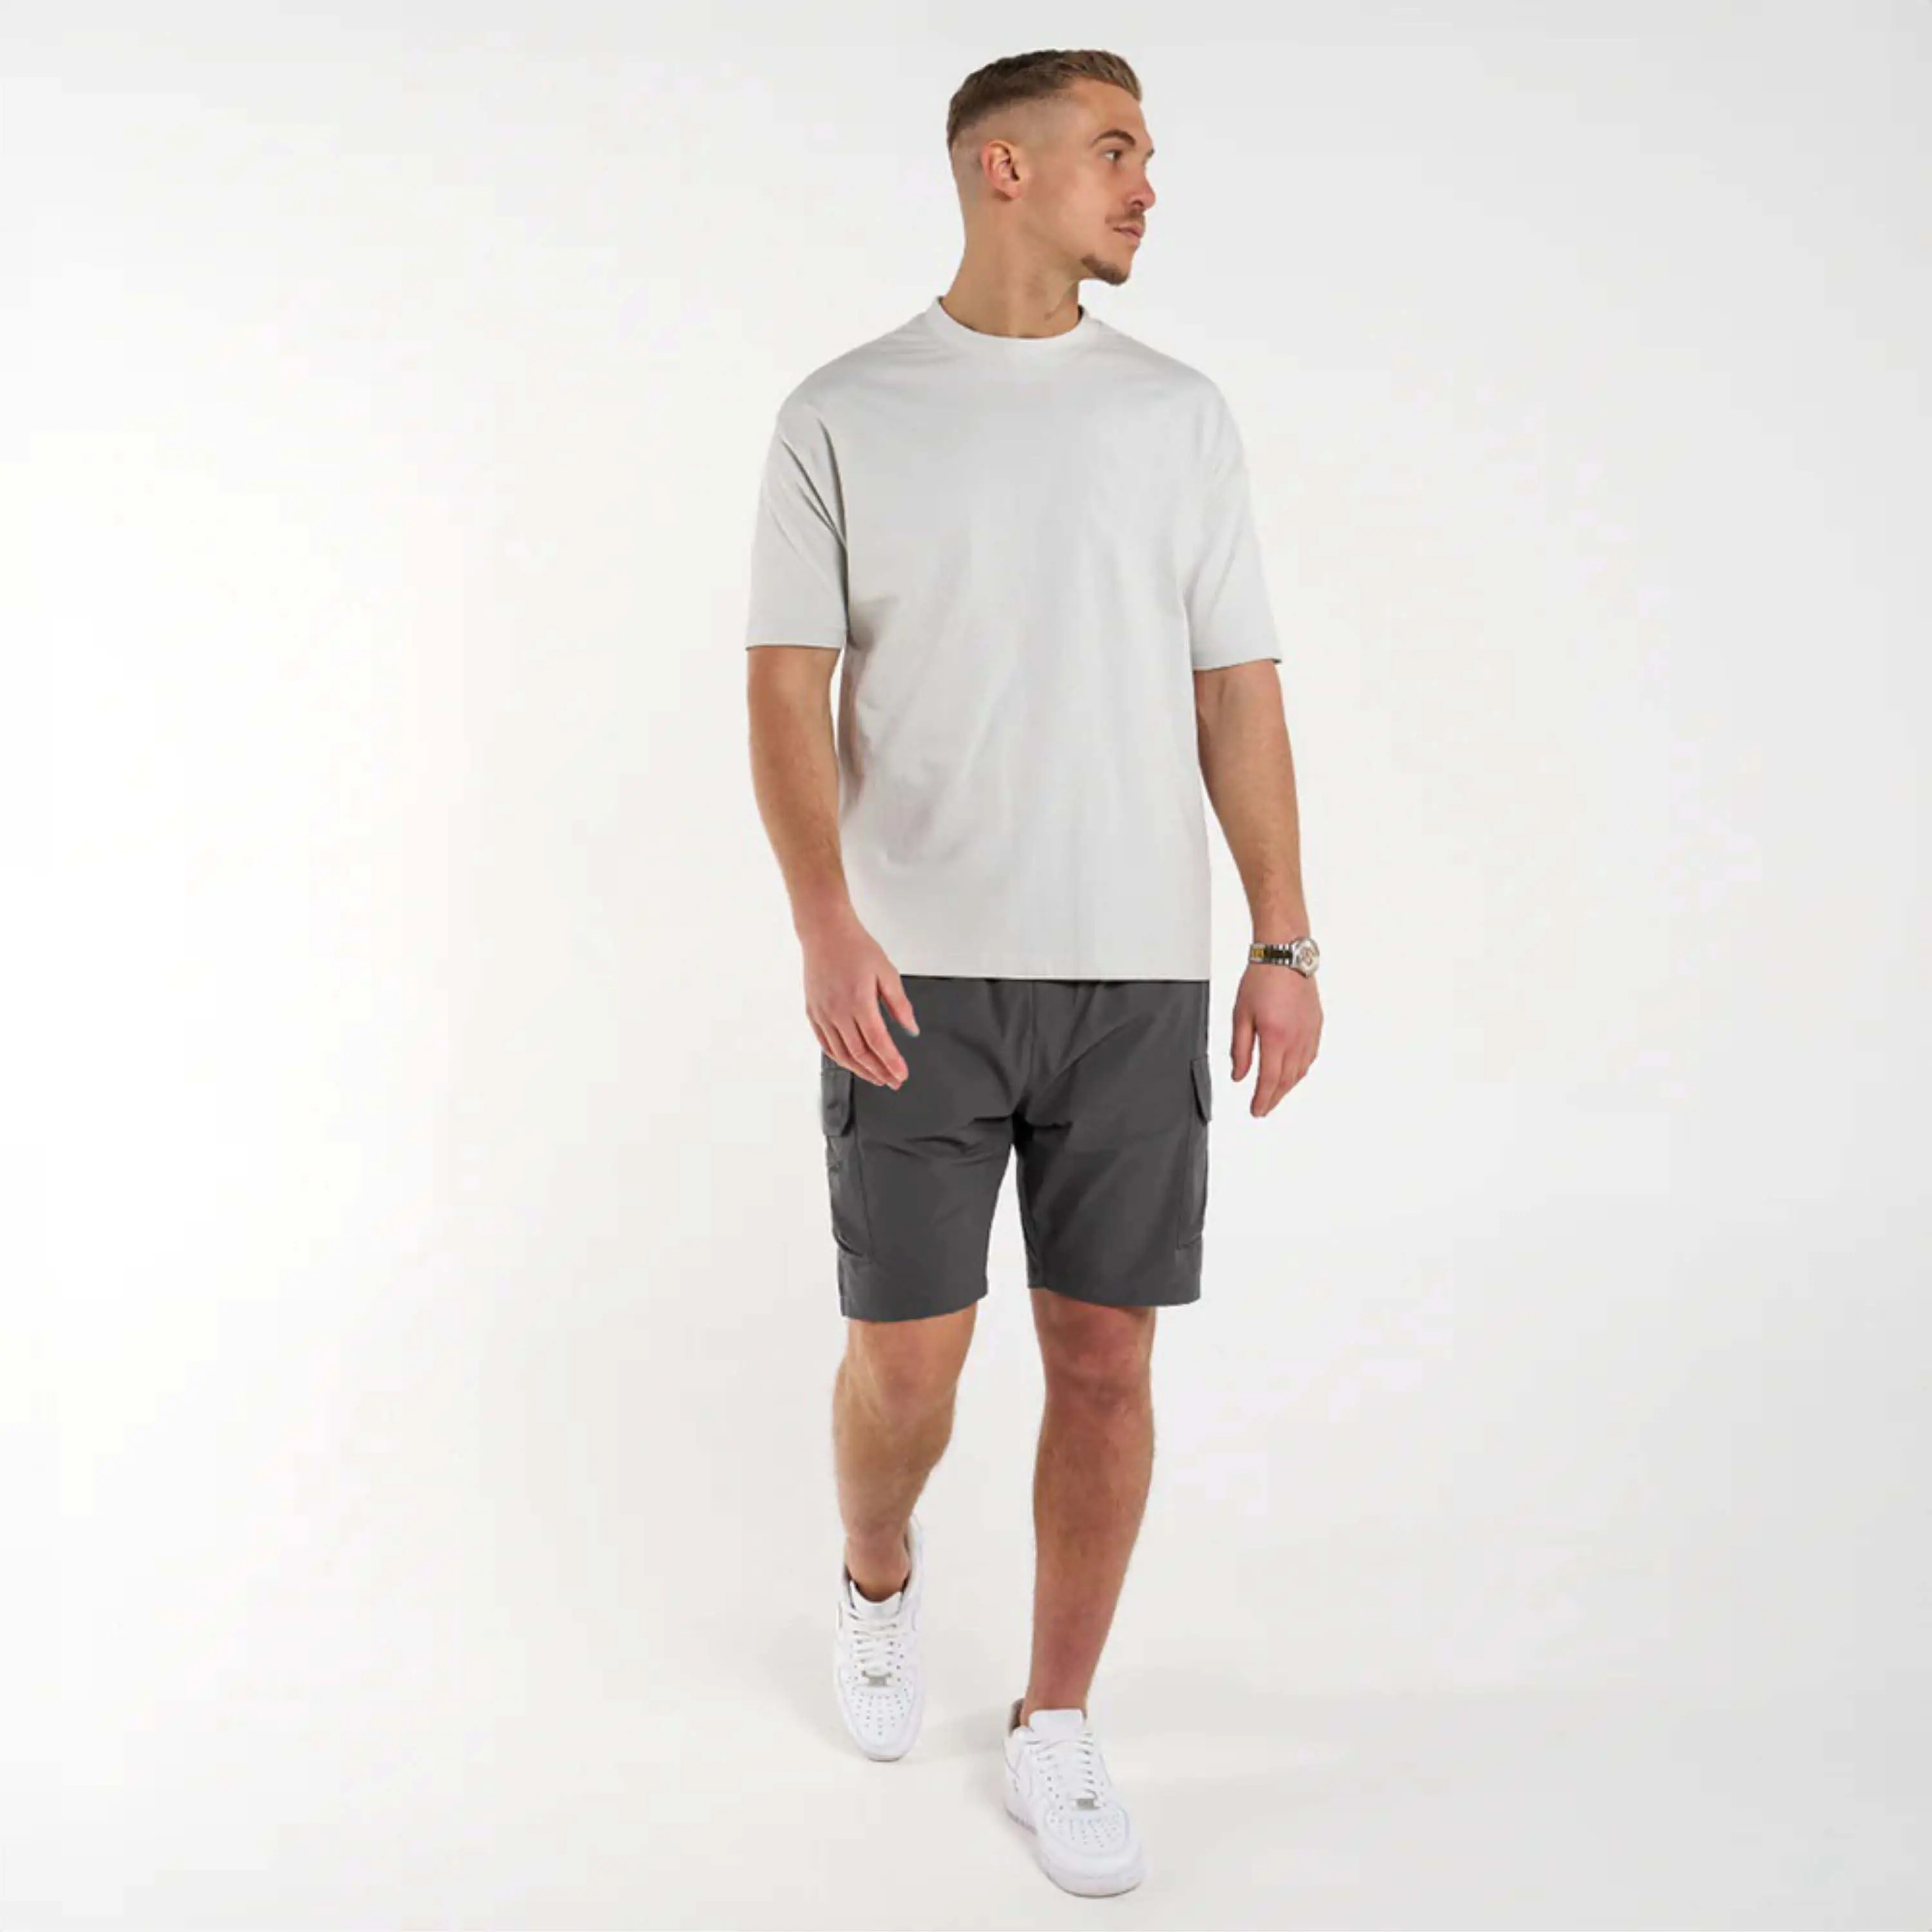 男性用TechwearスタイルTシャツ-未来的なデザイン、機能的なポケット、ハイテク生地